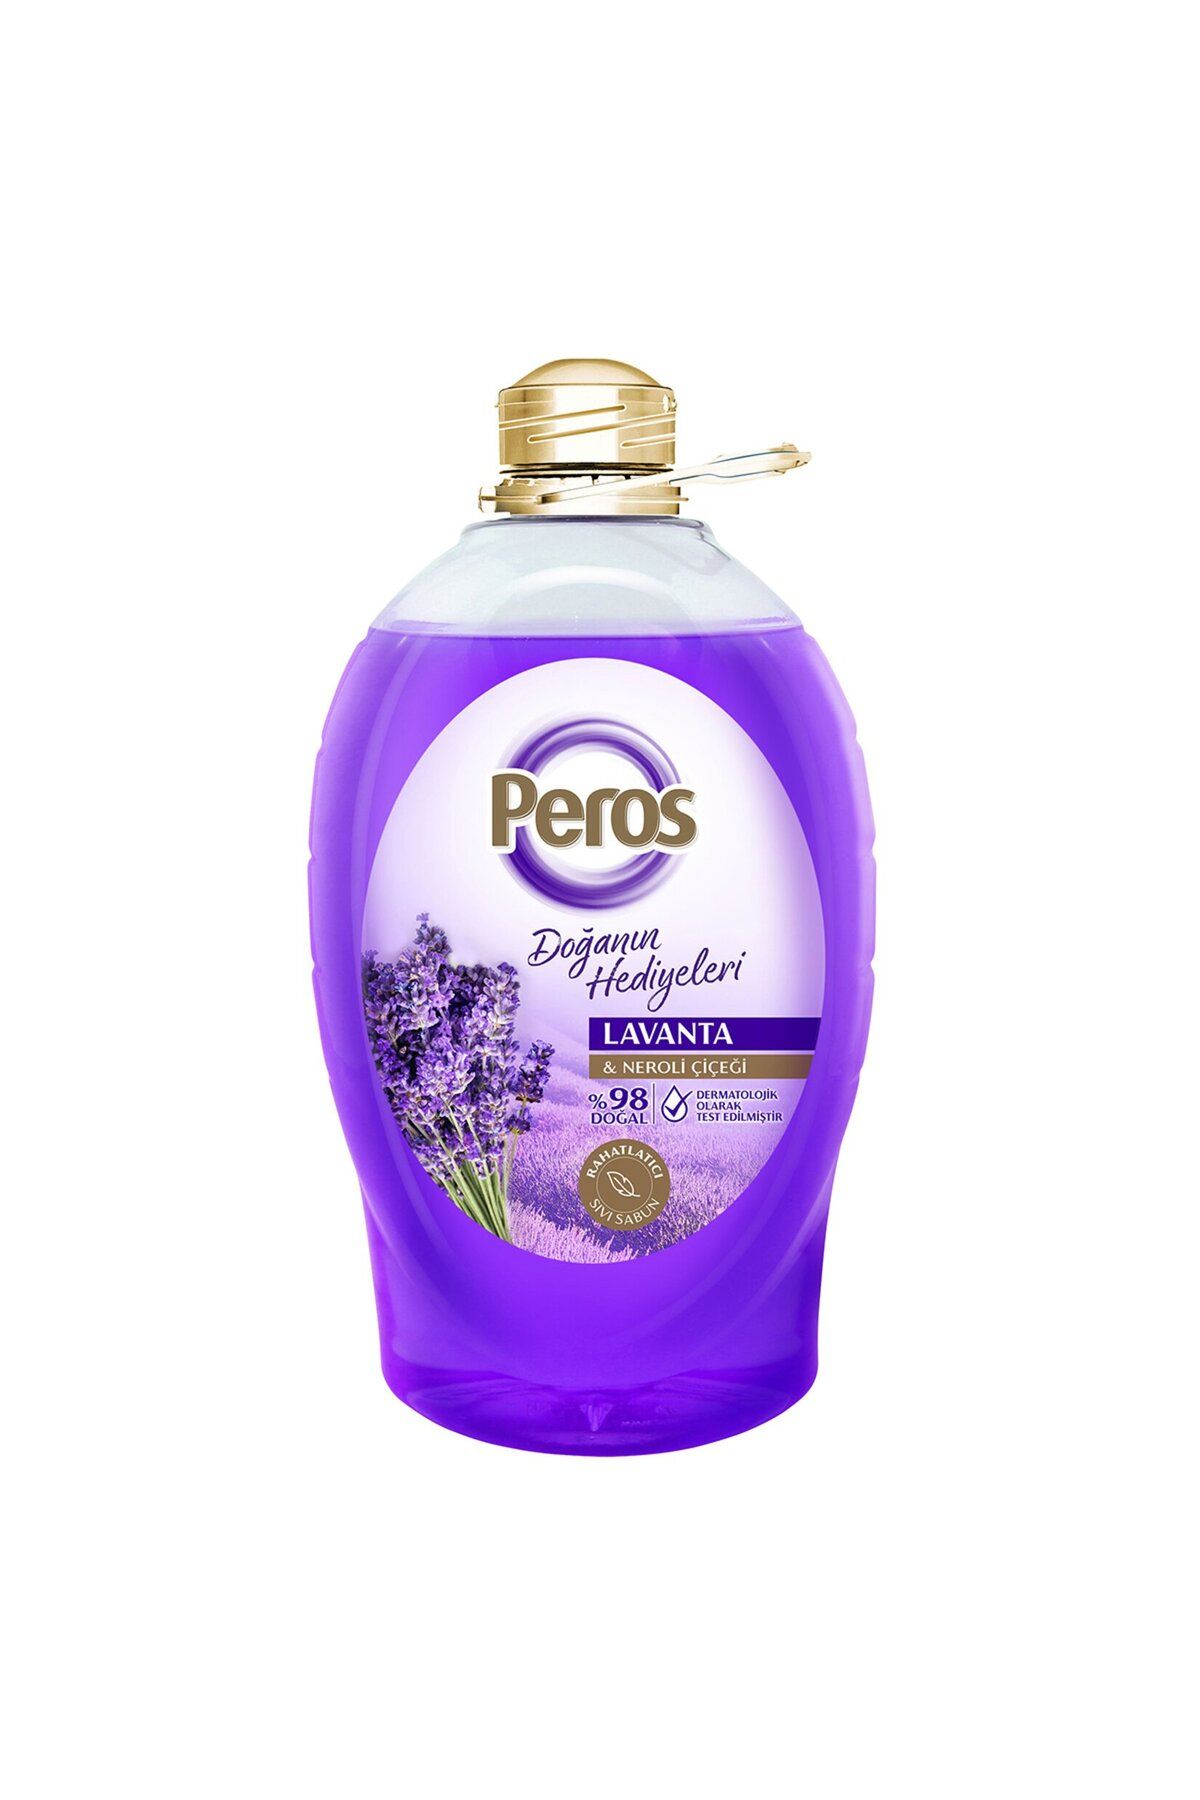 Peros Lavanta &neroli Çiçeği Özlü %98 Doğal Dermotolojik Olarak Test Edilmiş Sıvı Sabun 3,6 lt